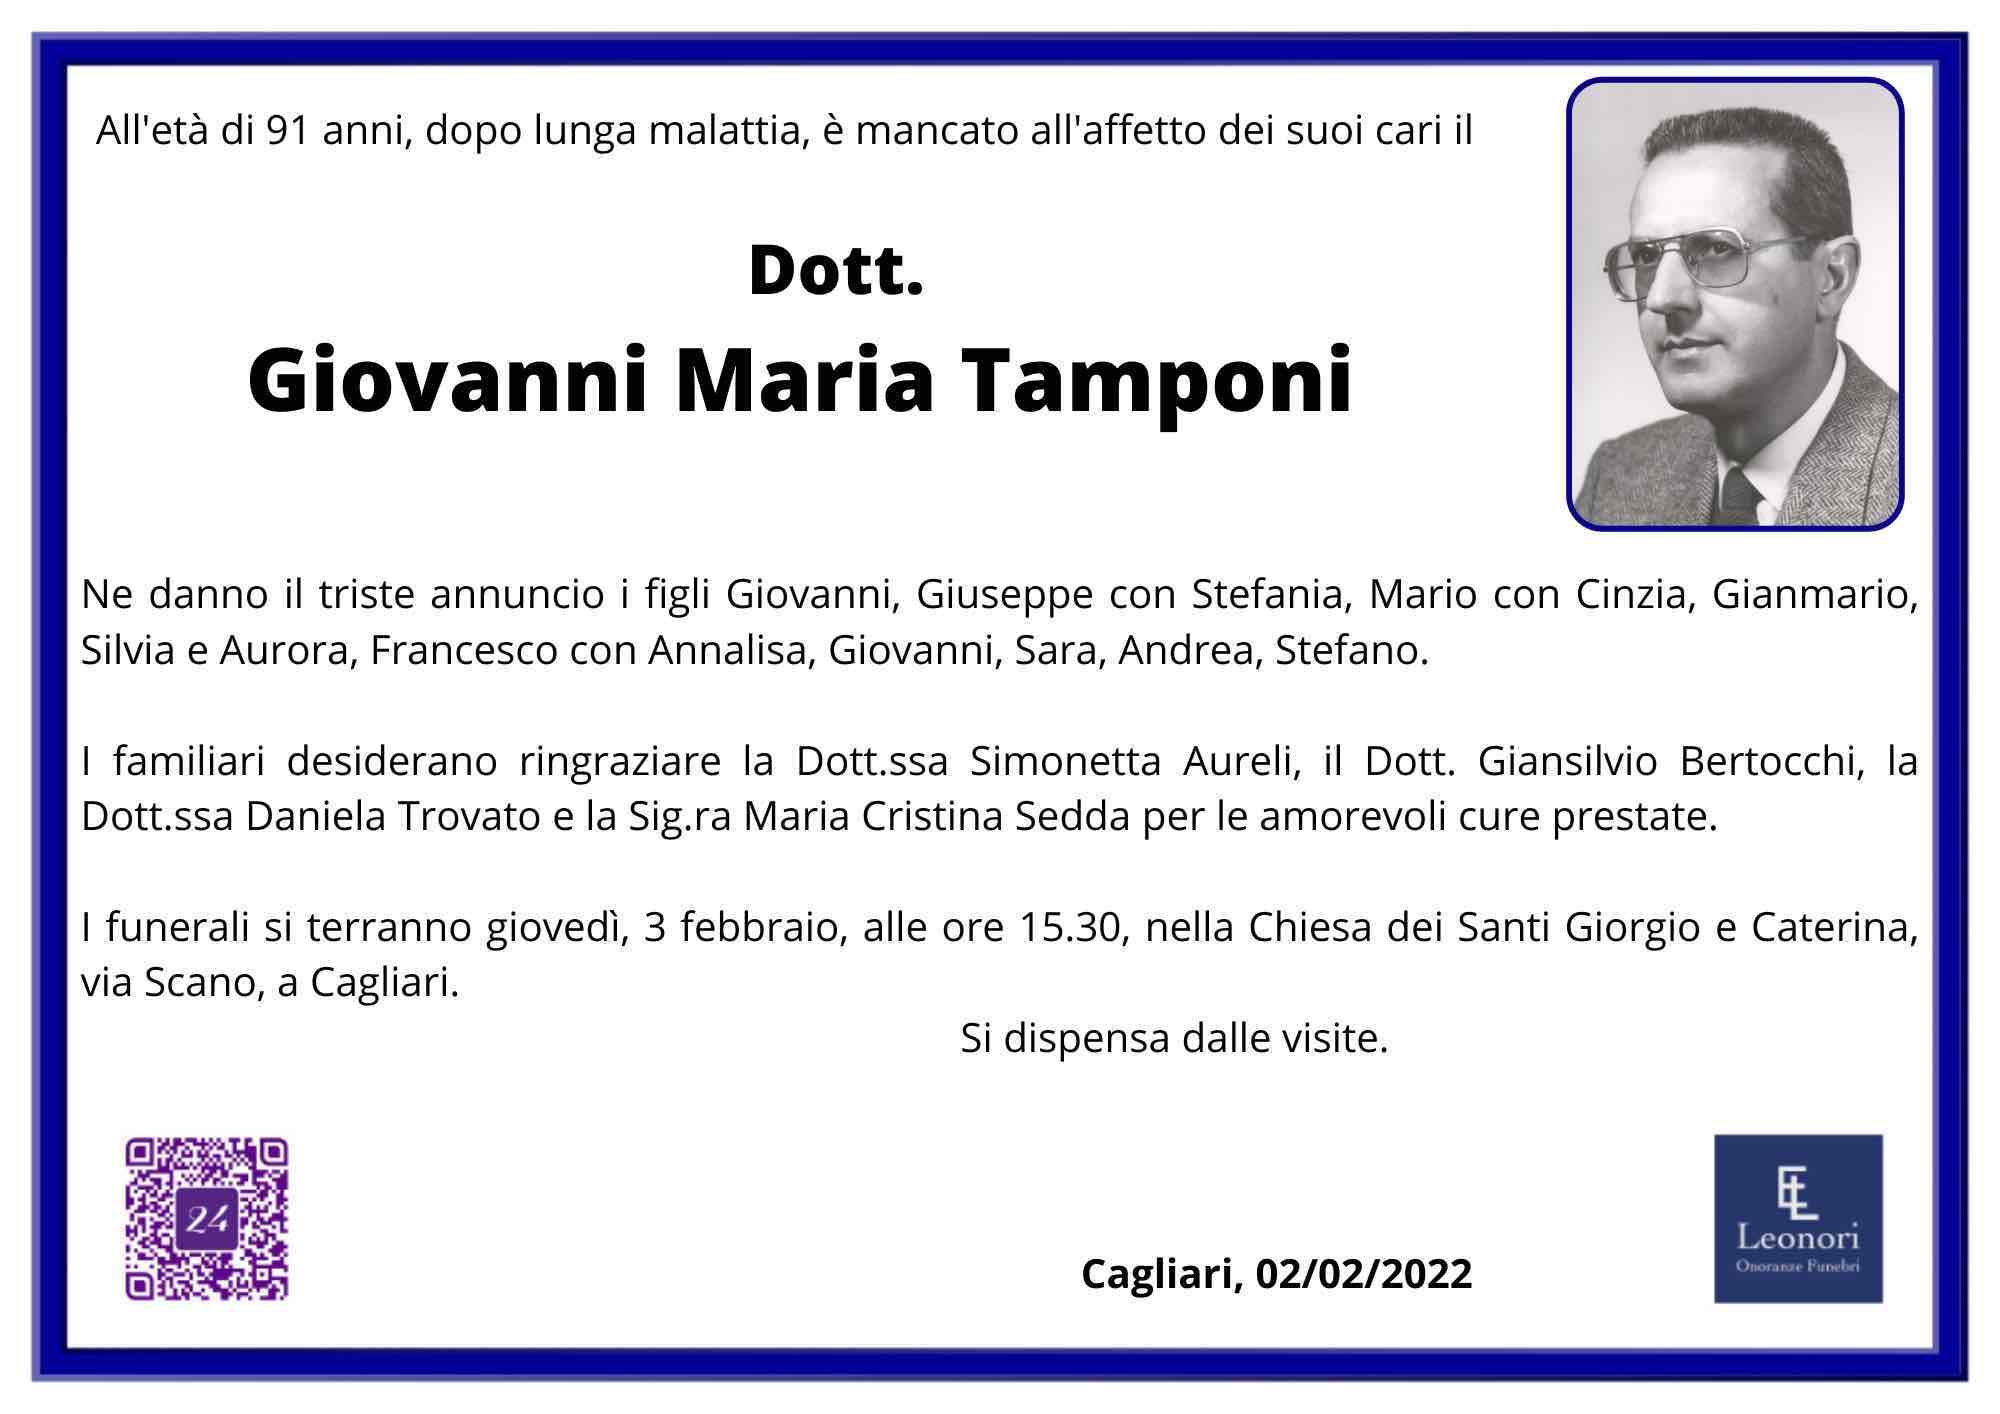 Giovanni Maria Tamponi